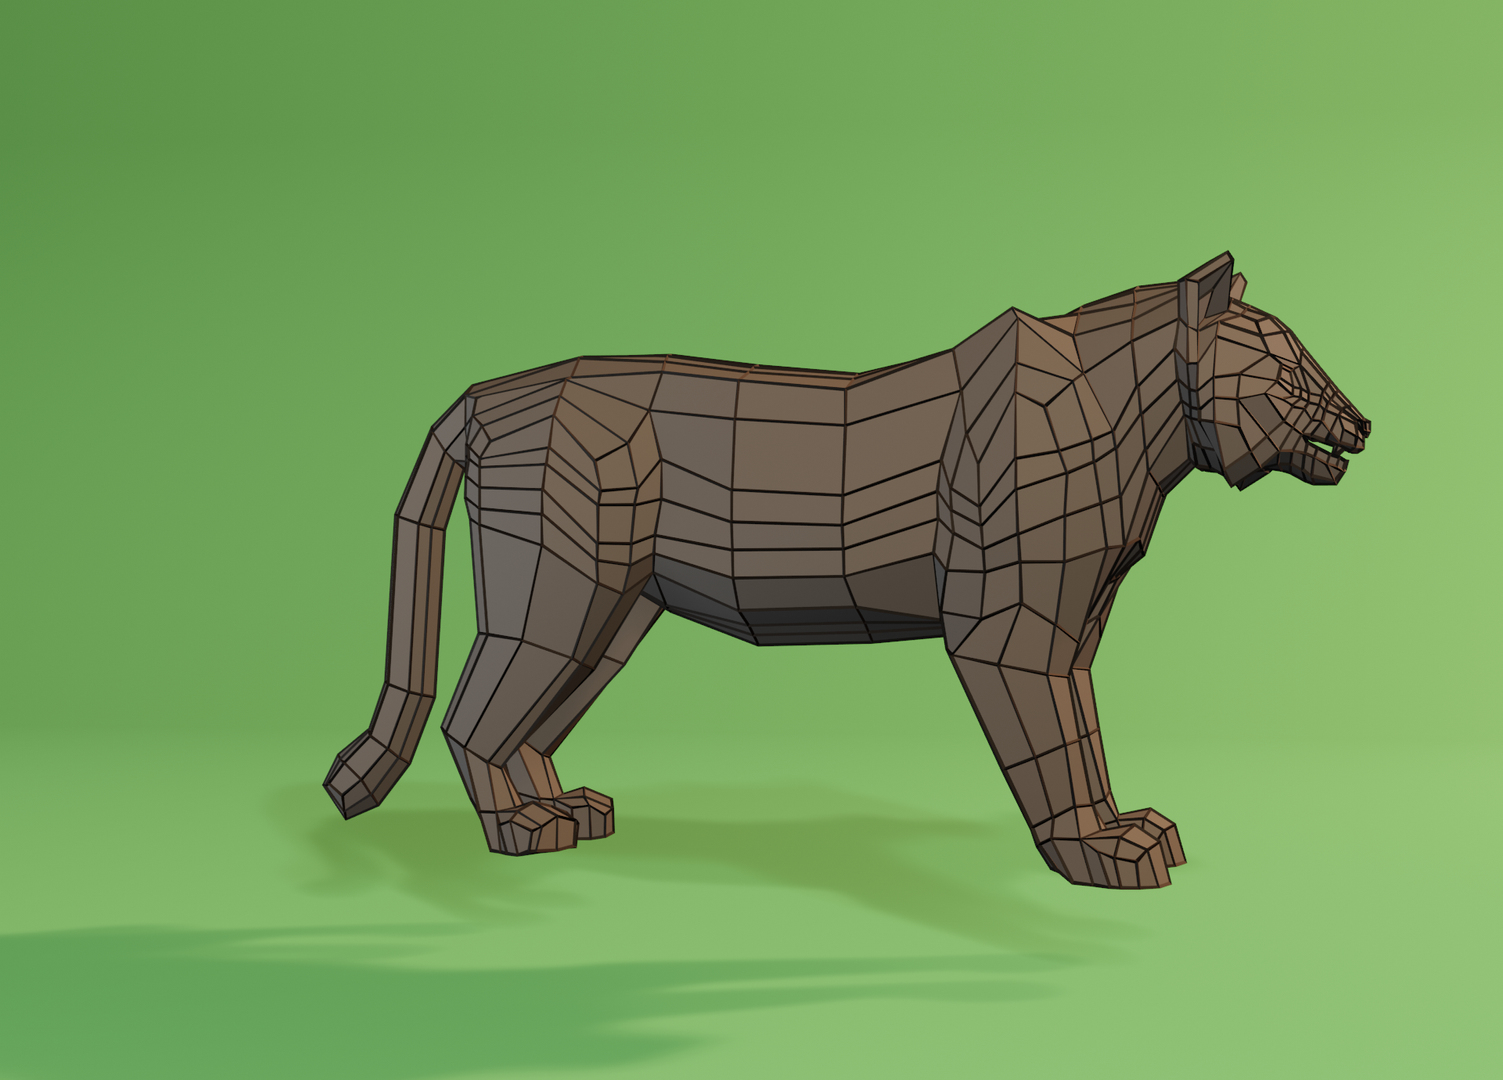 Bengal Tiger ANIMATED Yeti 3D model - TurboSquid 2124743